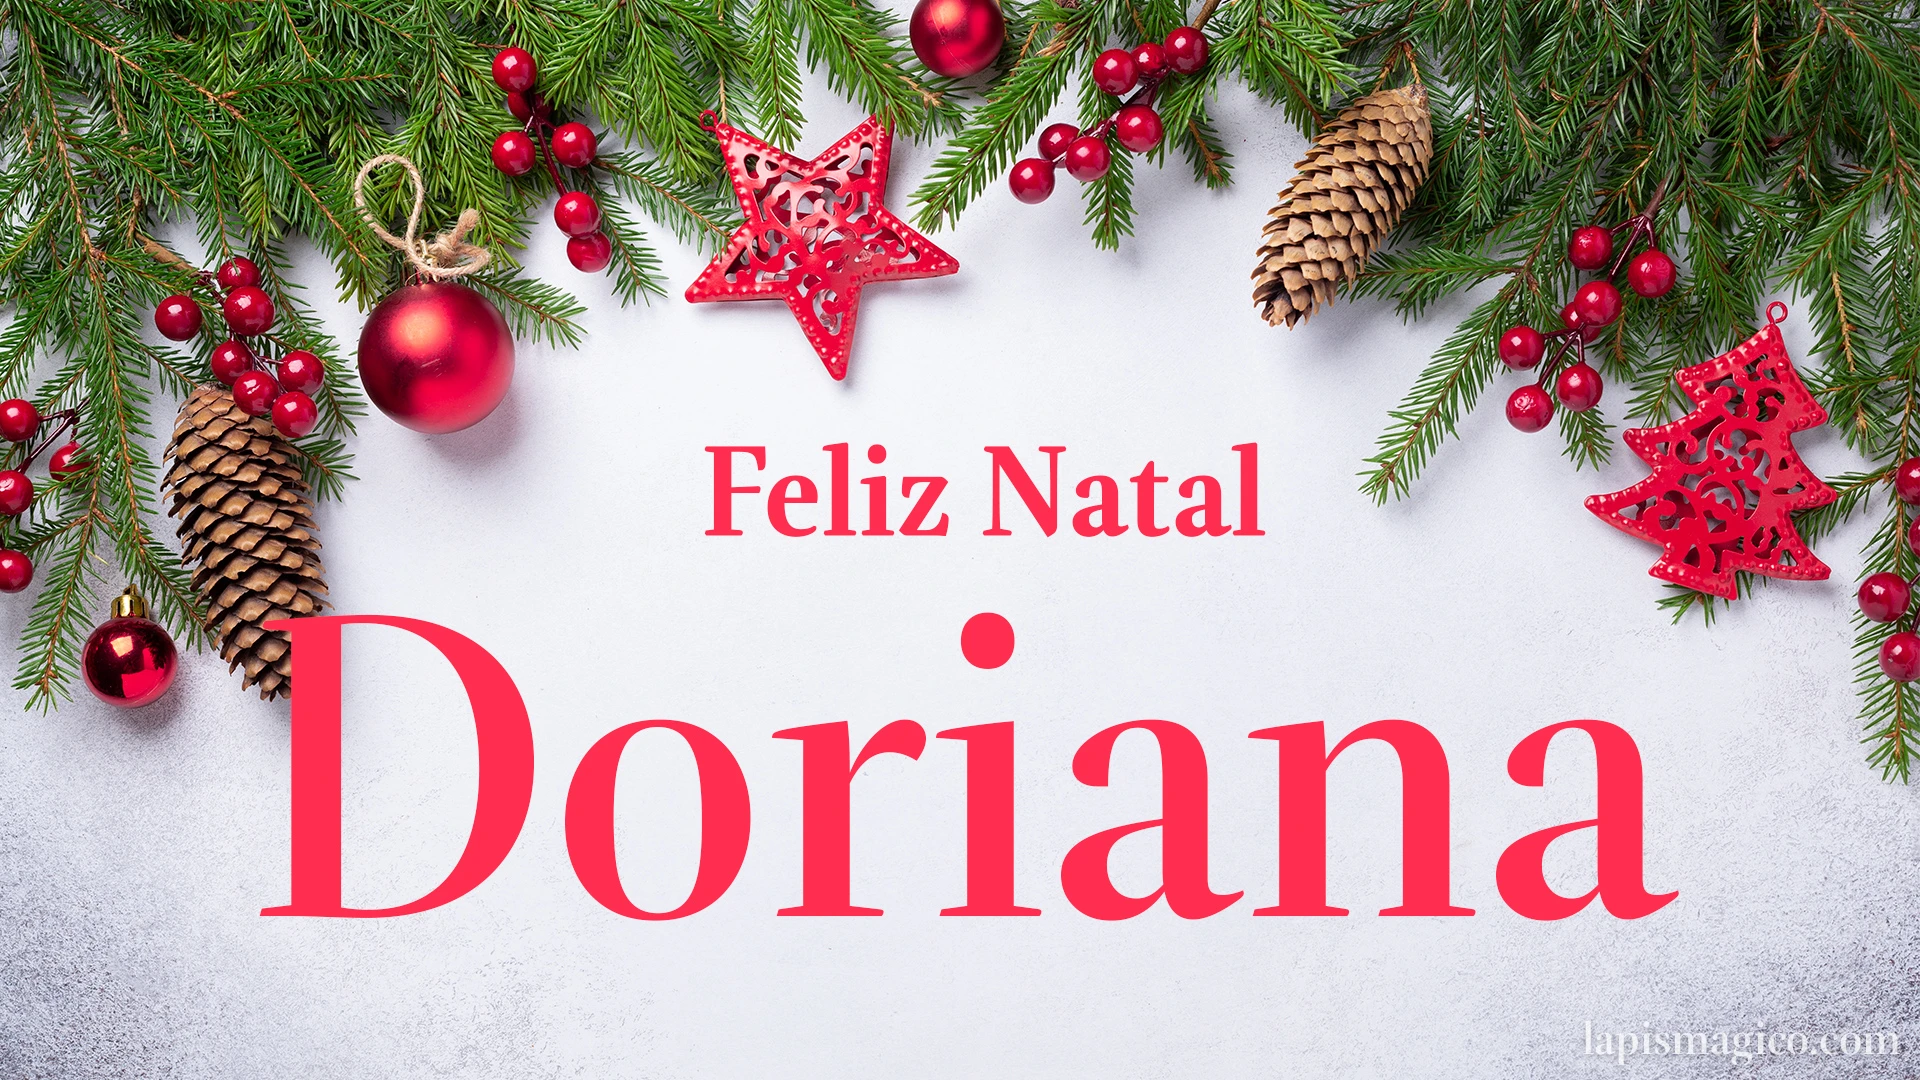 Oh Doriana, cinco postais de Feliz Natal Postal com o teu nome